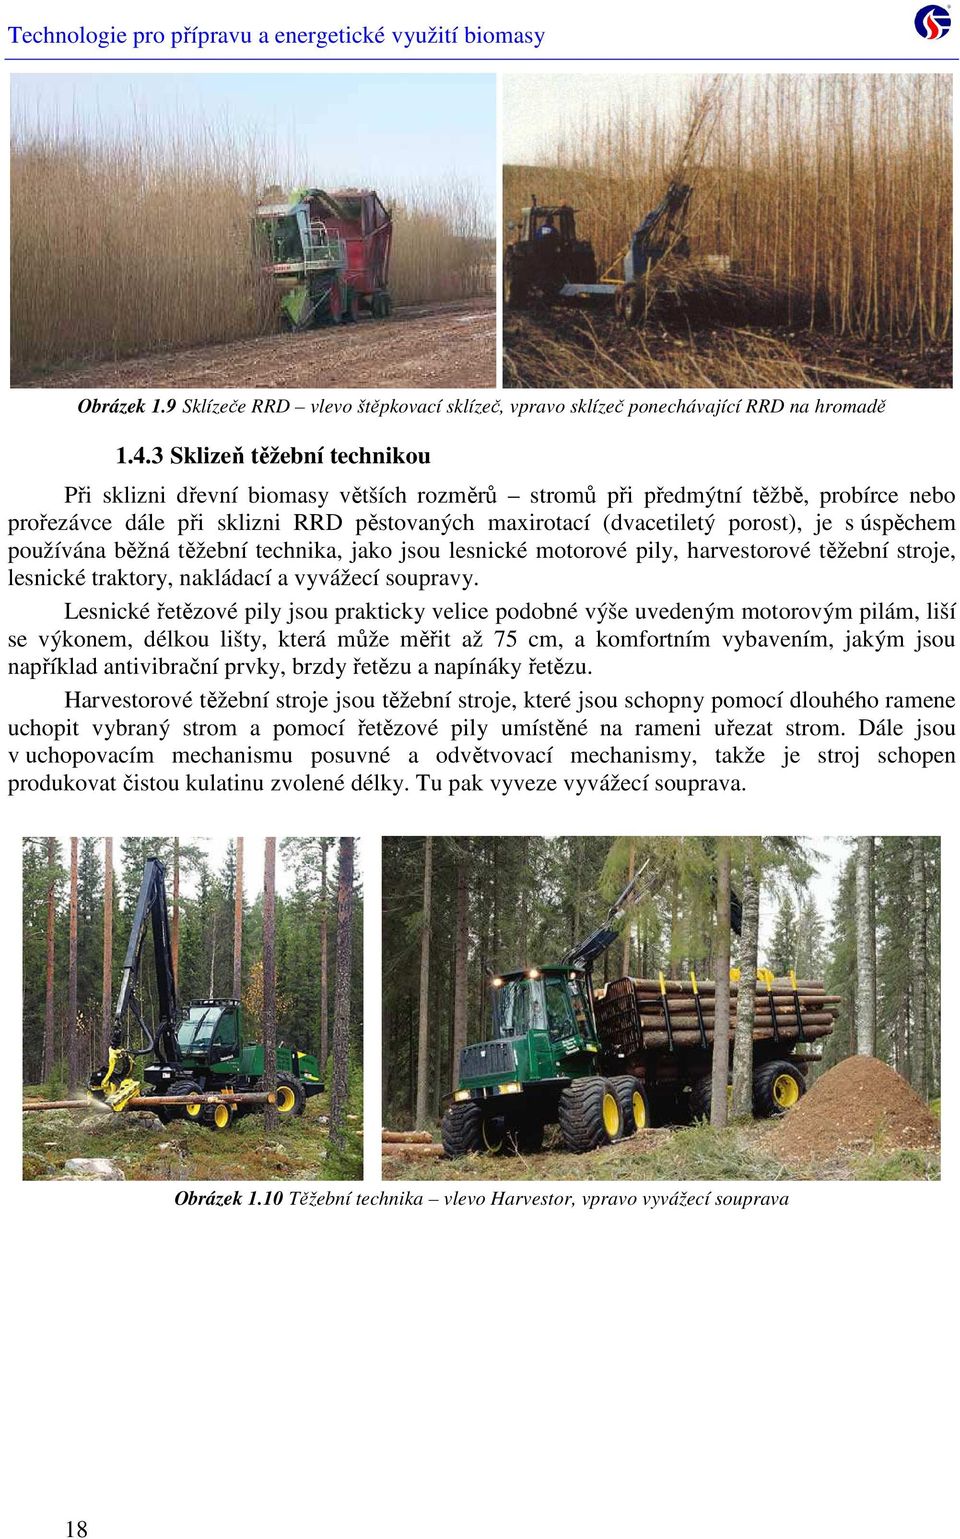 úspěchem používána běžná těžební technika, jako jsou lesnické motorové pily, harvestorové těžební stroje, lesnické traktory, nakládací a vyvážecí soupravy.